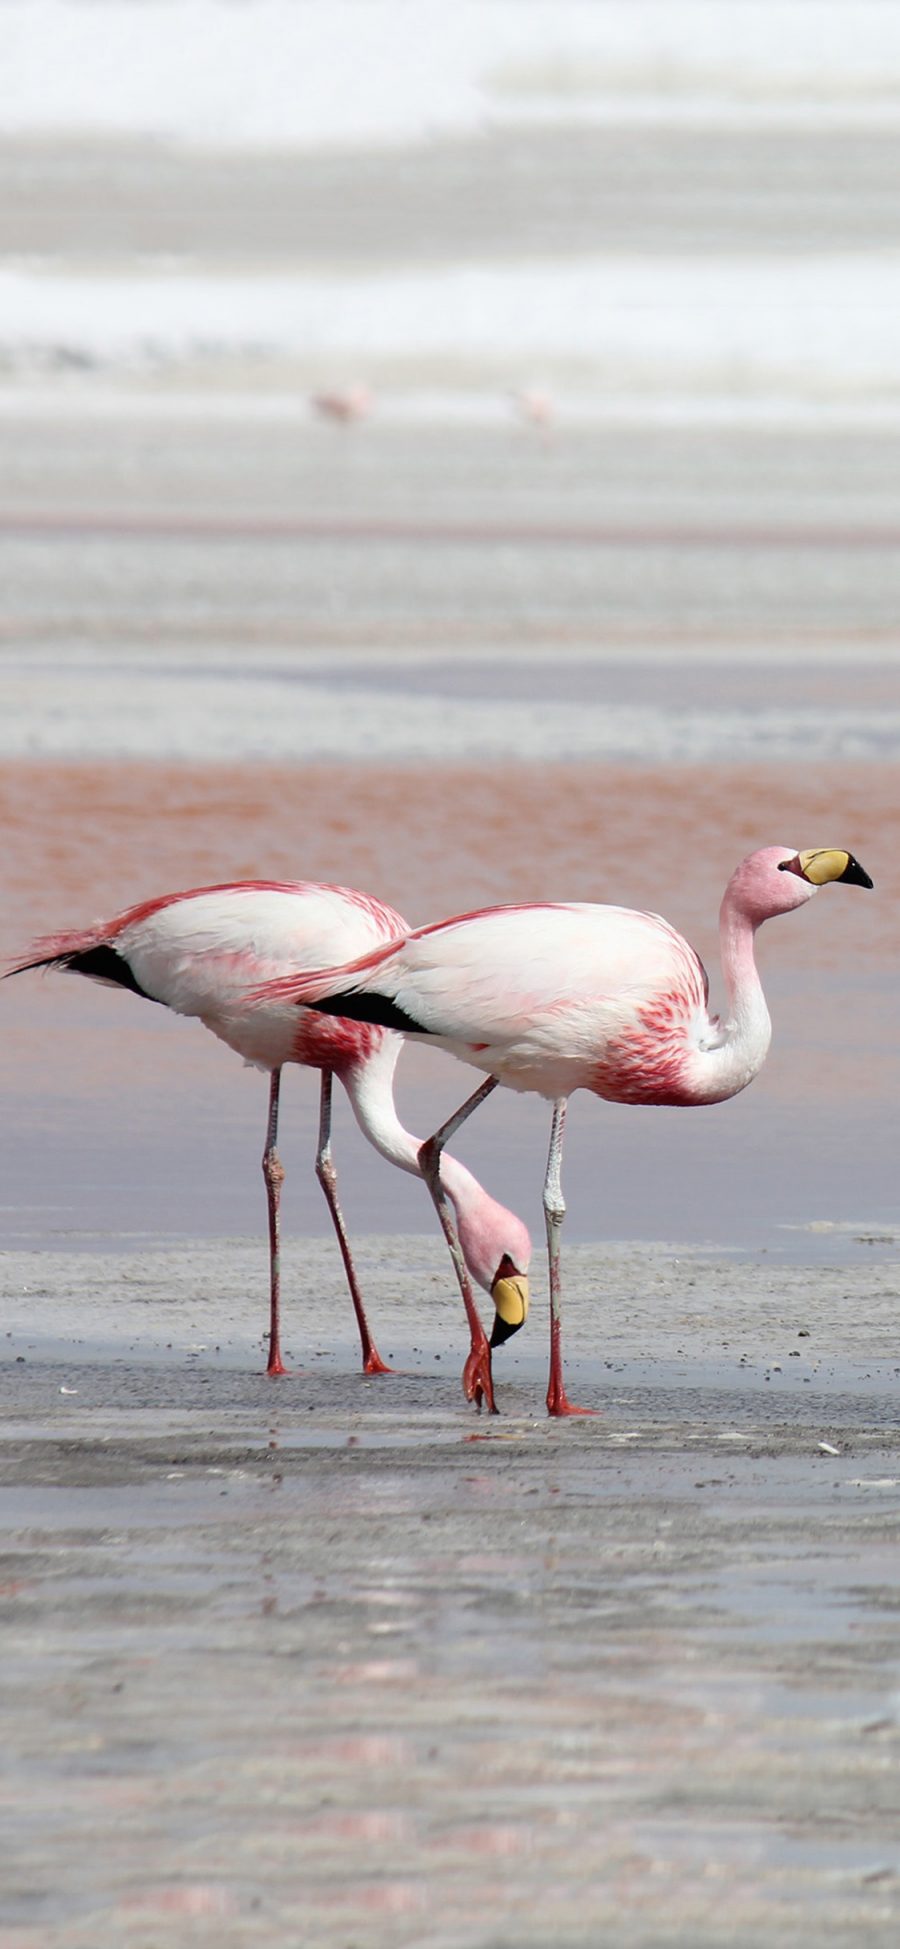 [2436×1125]海滩 保护动物 火烈鸟 粉色 长腿 苹果手机壁纸图片